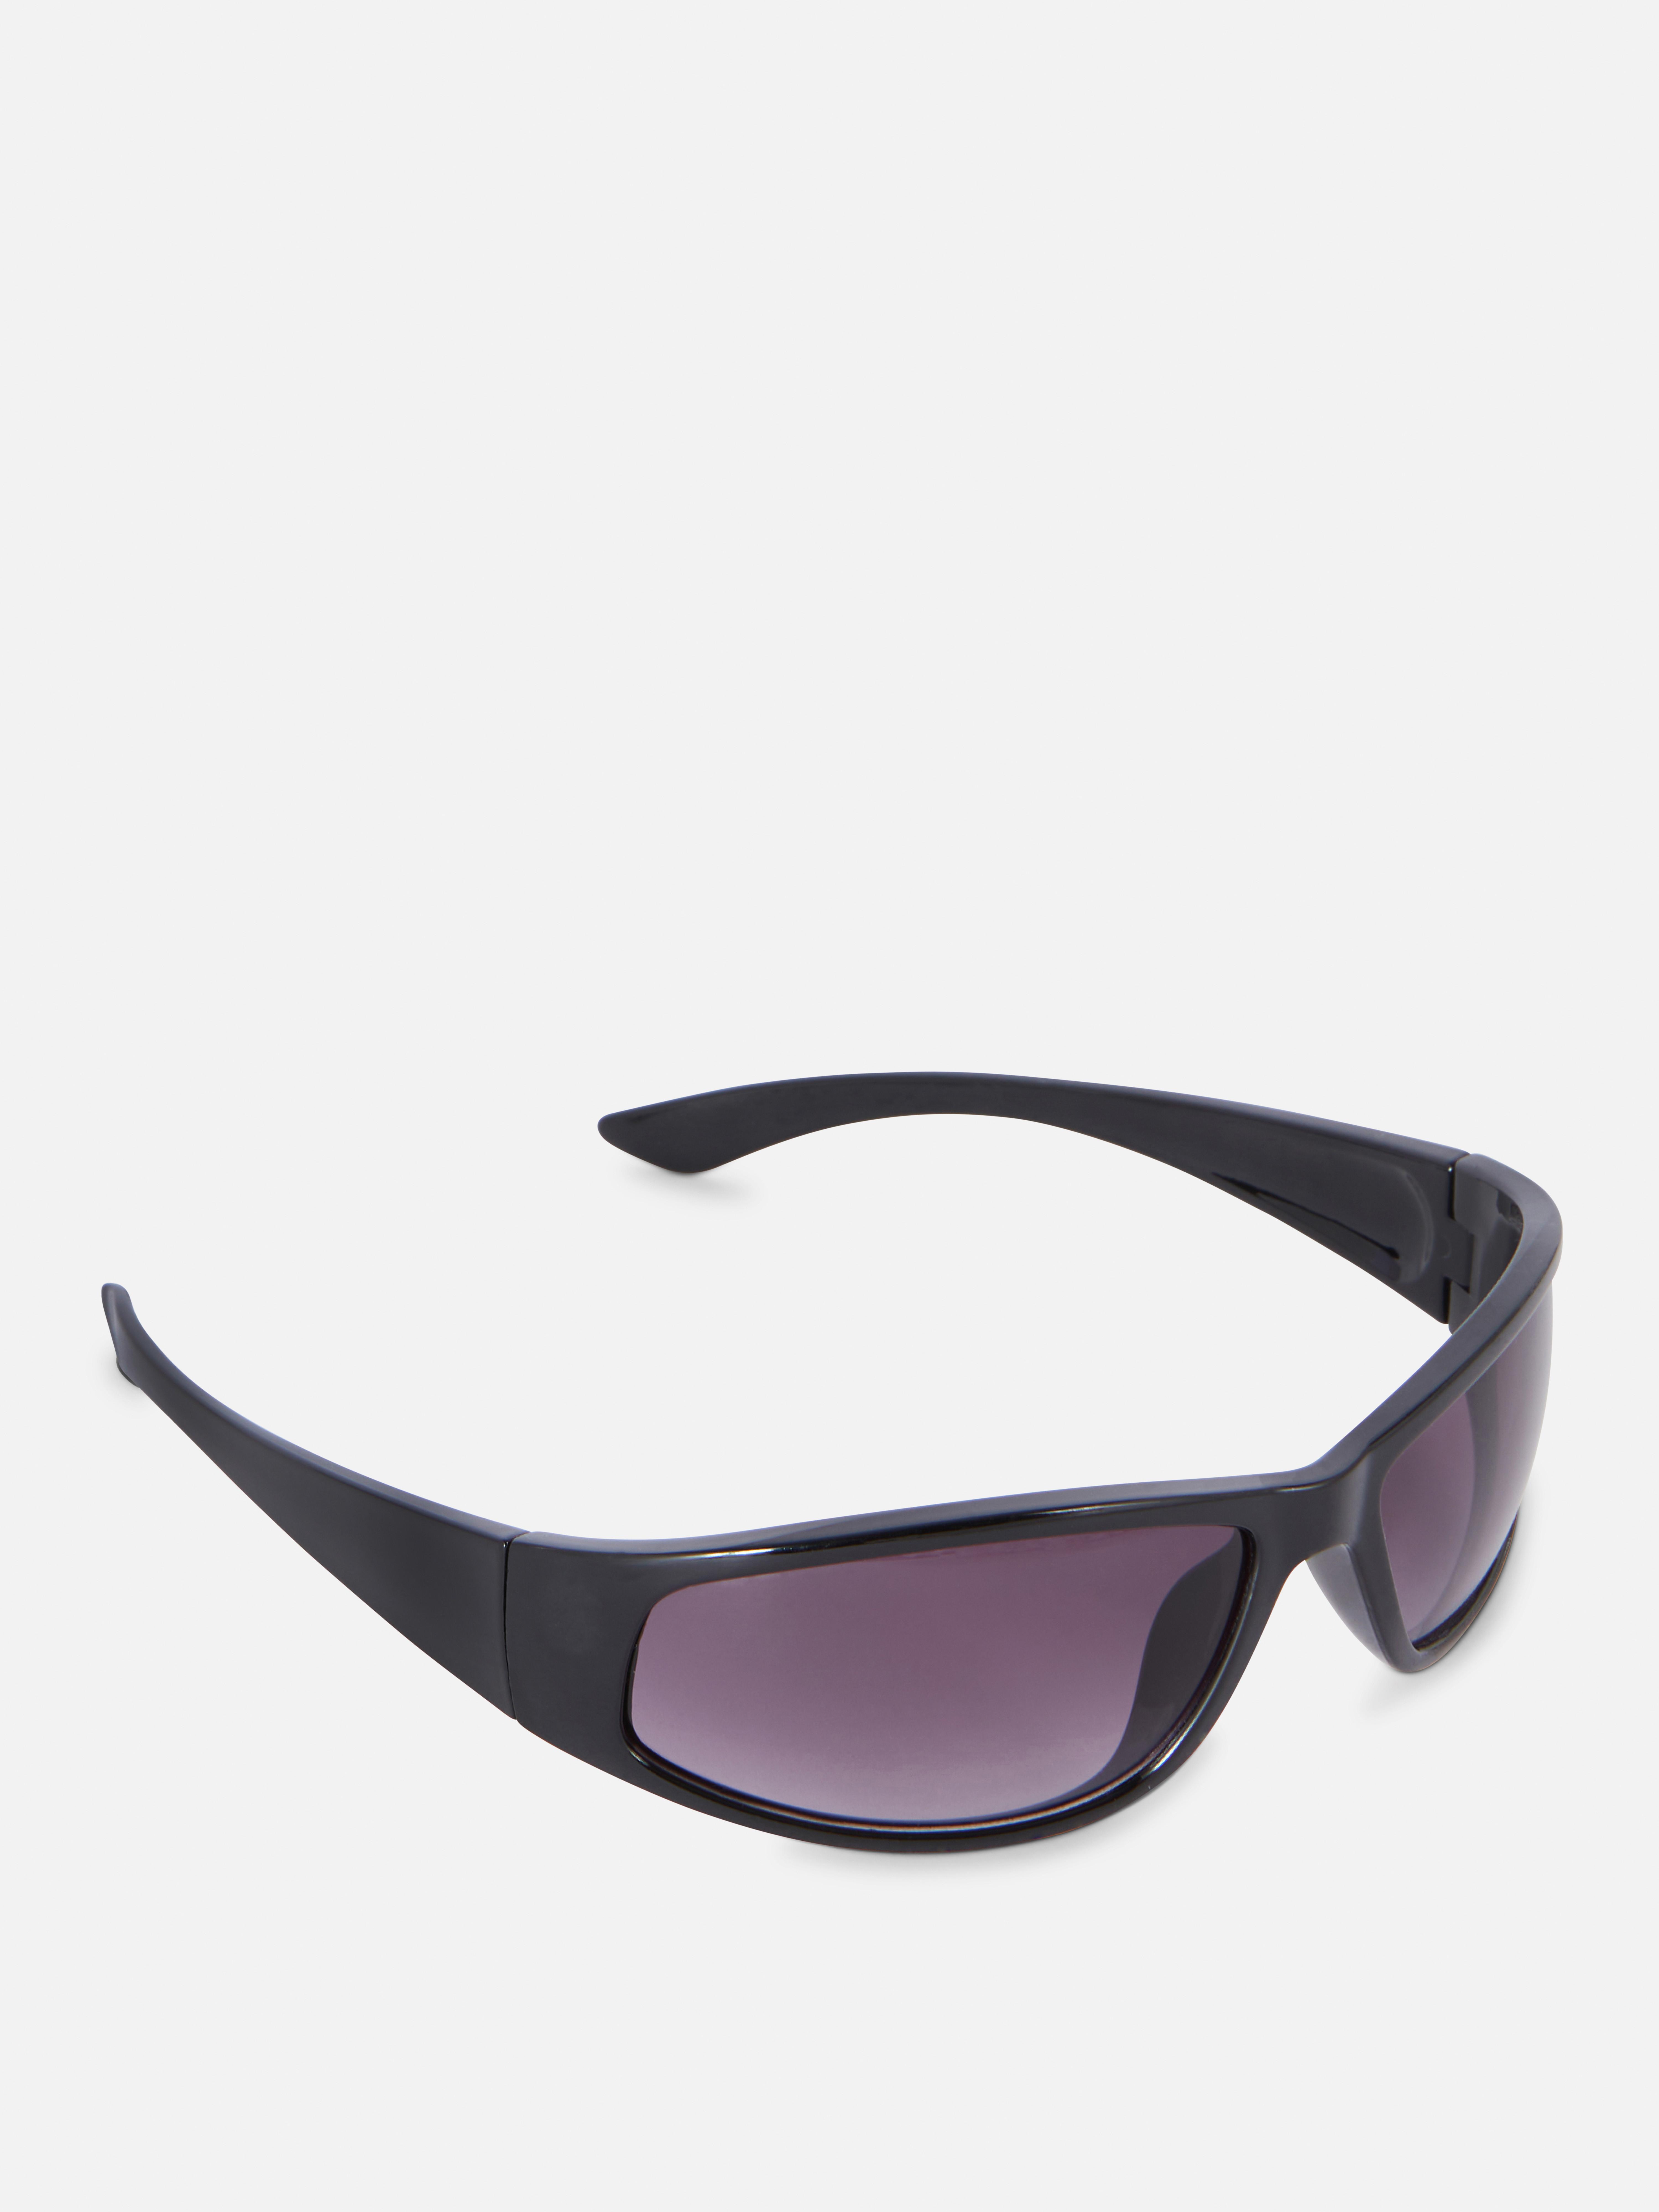 Womens Black Rectangular Visor Sunglasses